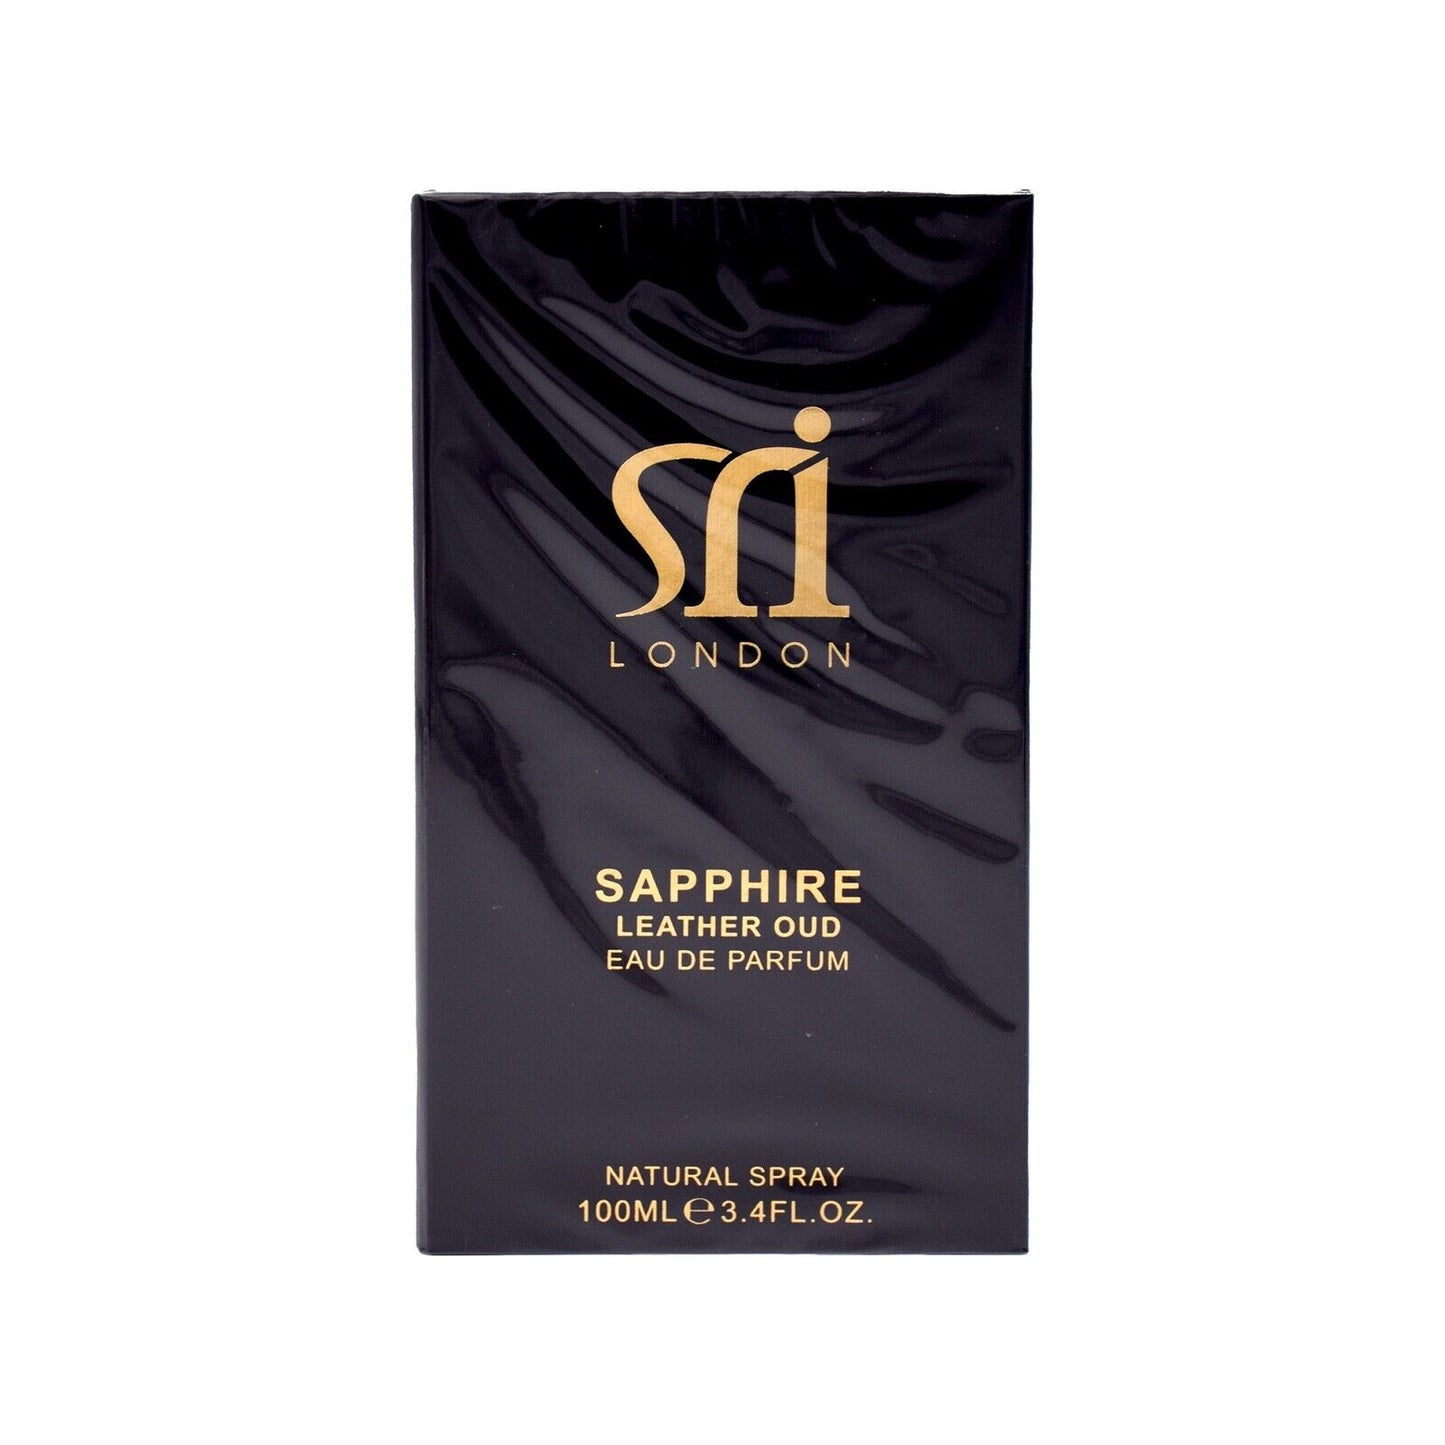 Sri London Sapphire Leather Oud Eau De Parfum for Men Fragrance Spray 100ML